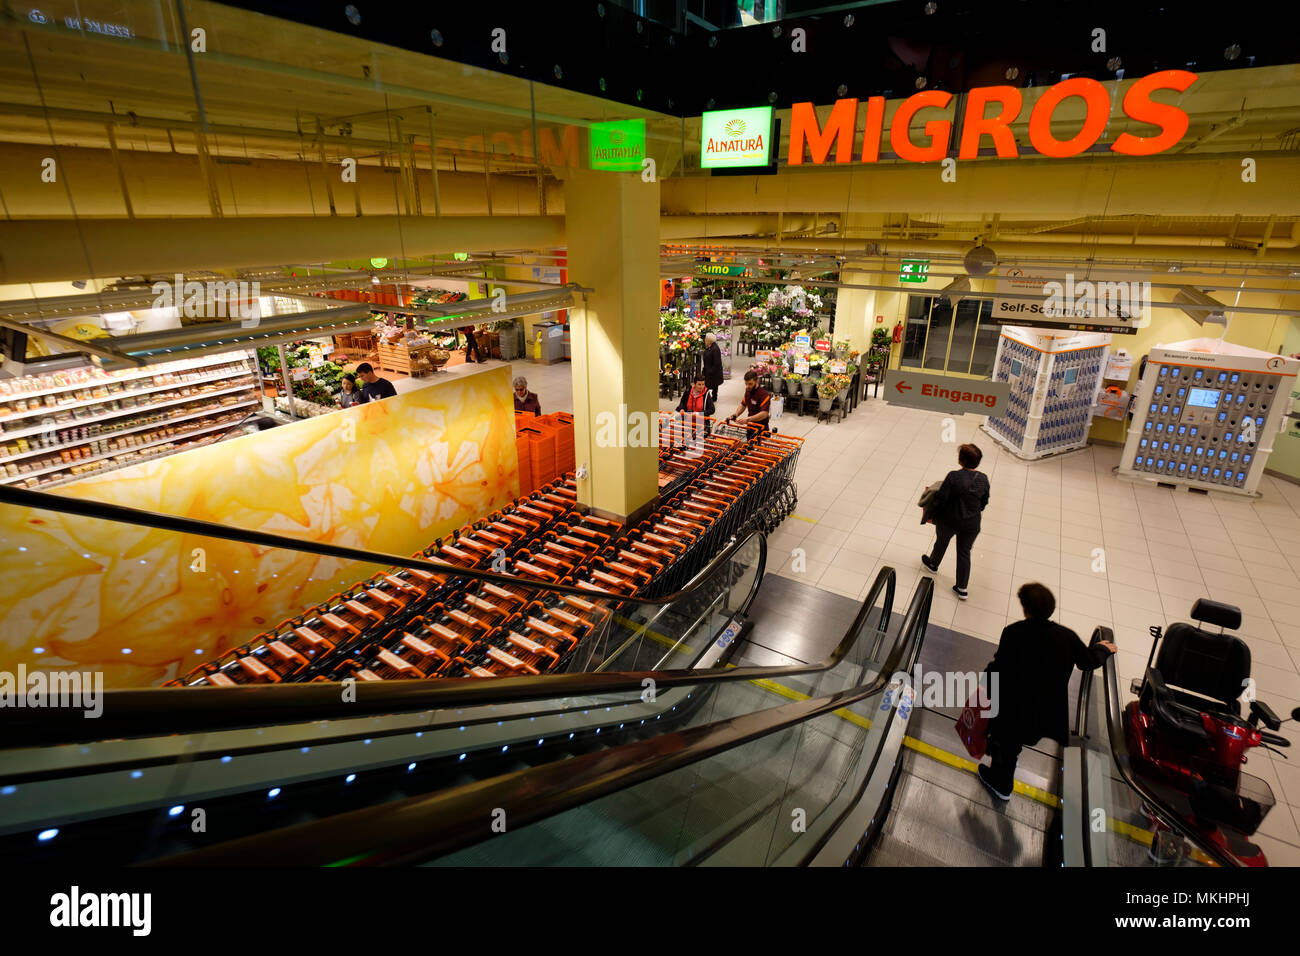 Migros supermarket in Zug, Switzerland, Europe Stock Photo